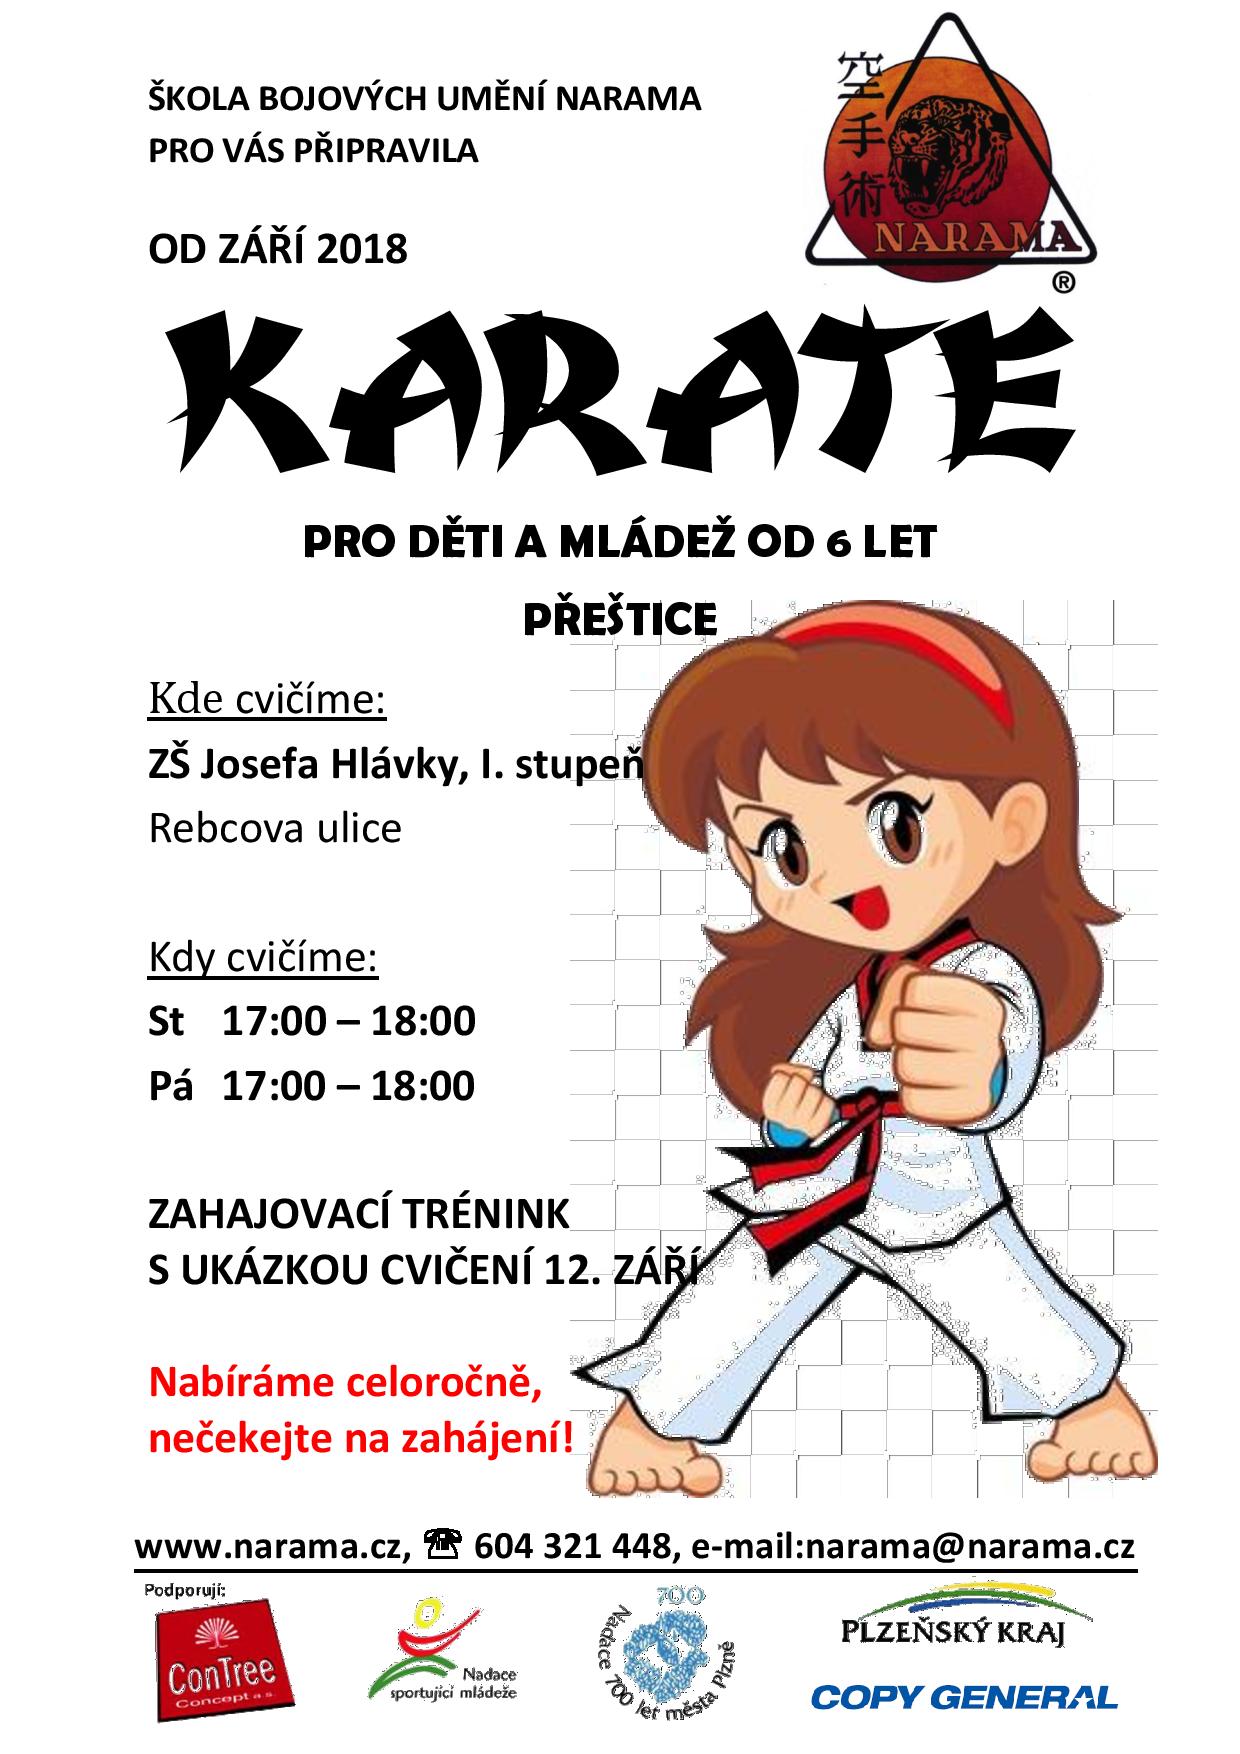 NARAMA Přeštice - karate pro děti a mládež od 6 let